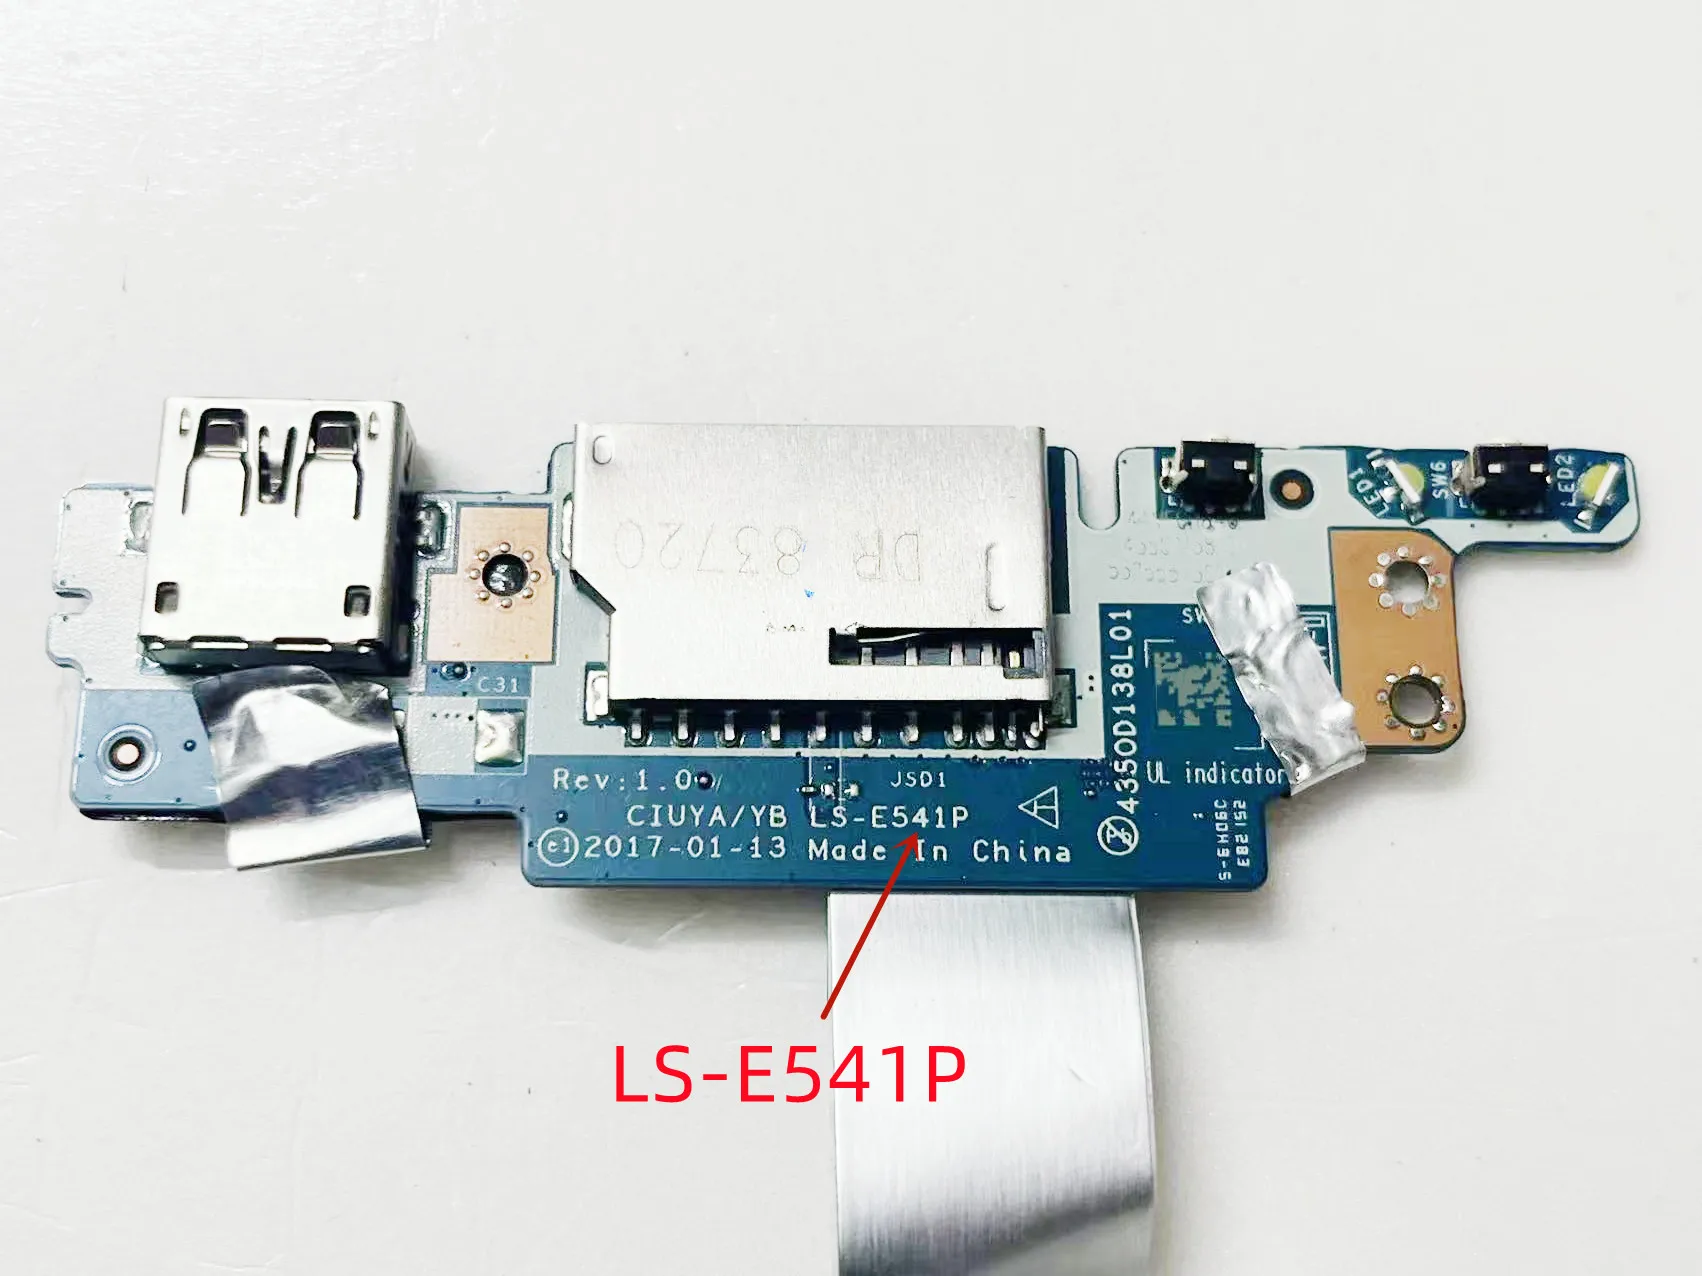 עבור Lenovo יוגה 520-14IKB להגמיש 5-1470 לחצן ההפעלה USB קורא כרטיסי לוח עם כבל LS-E541P 100% נבדק מהירה - 2